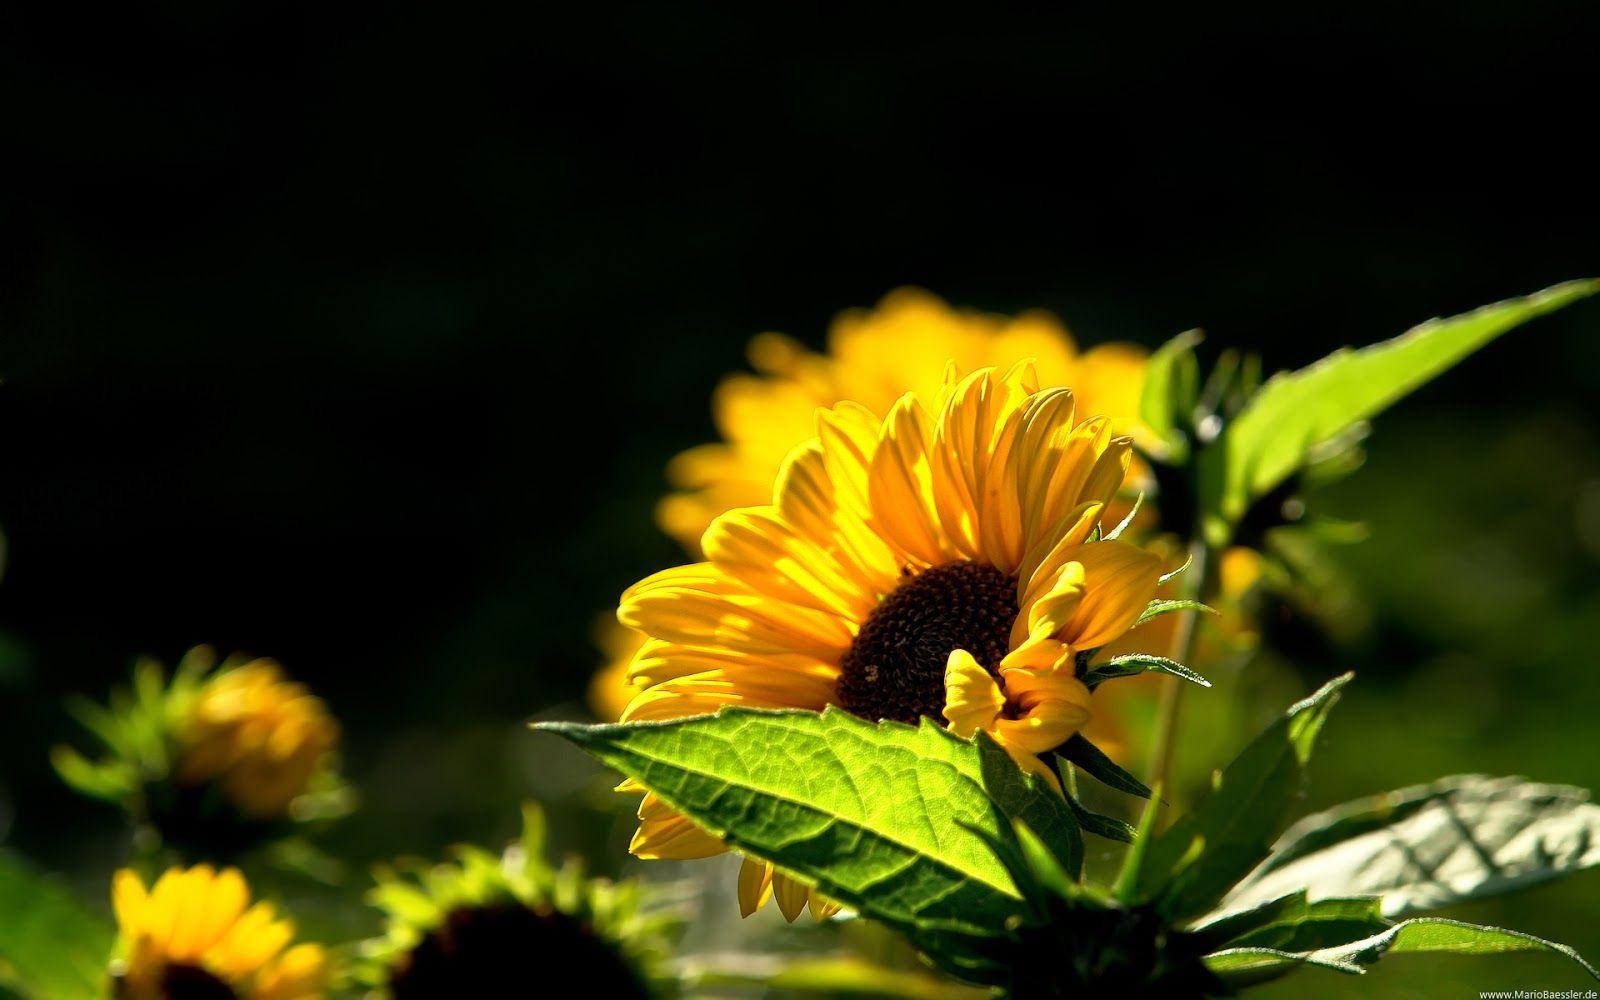 Sunflower Deskd Widescreen Wallpaper Background Full HD Pics